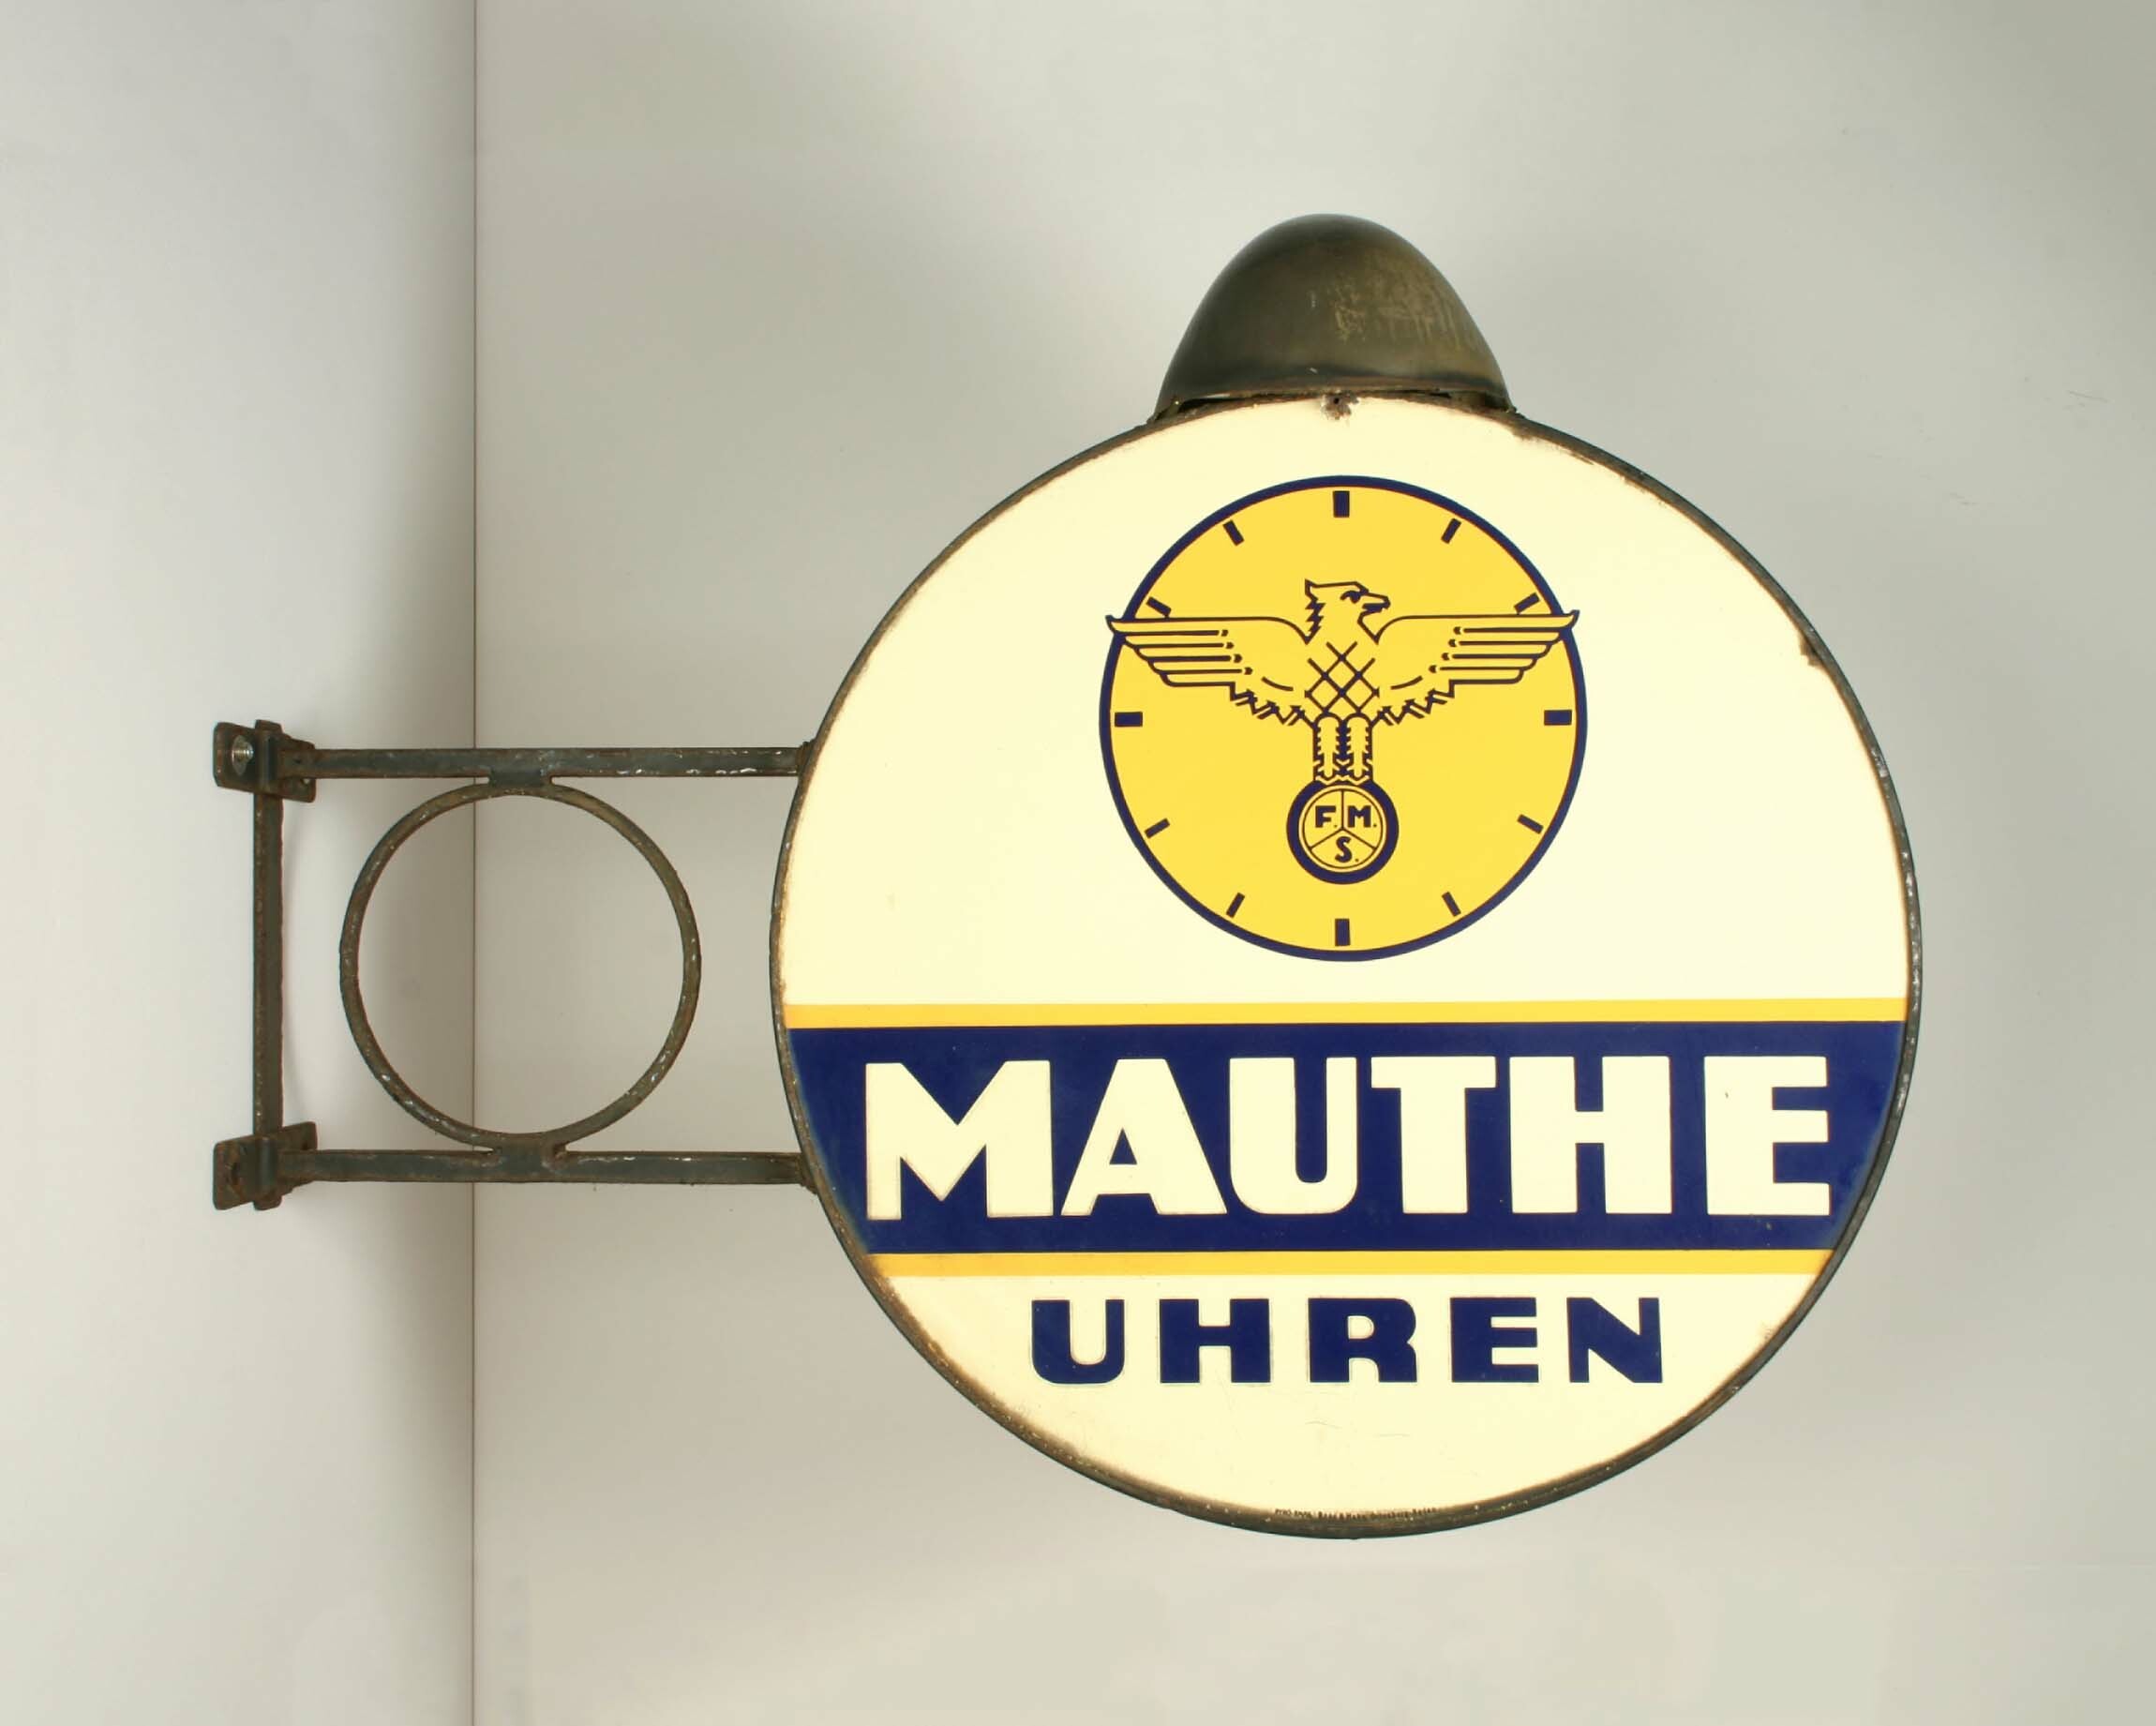 Werbeschild "Mauthe Uhren", Boos und Hahn, Ortenberg, 1935 (Deutsches Uhrenmuseum CC BY-SA)